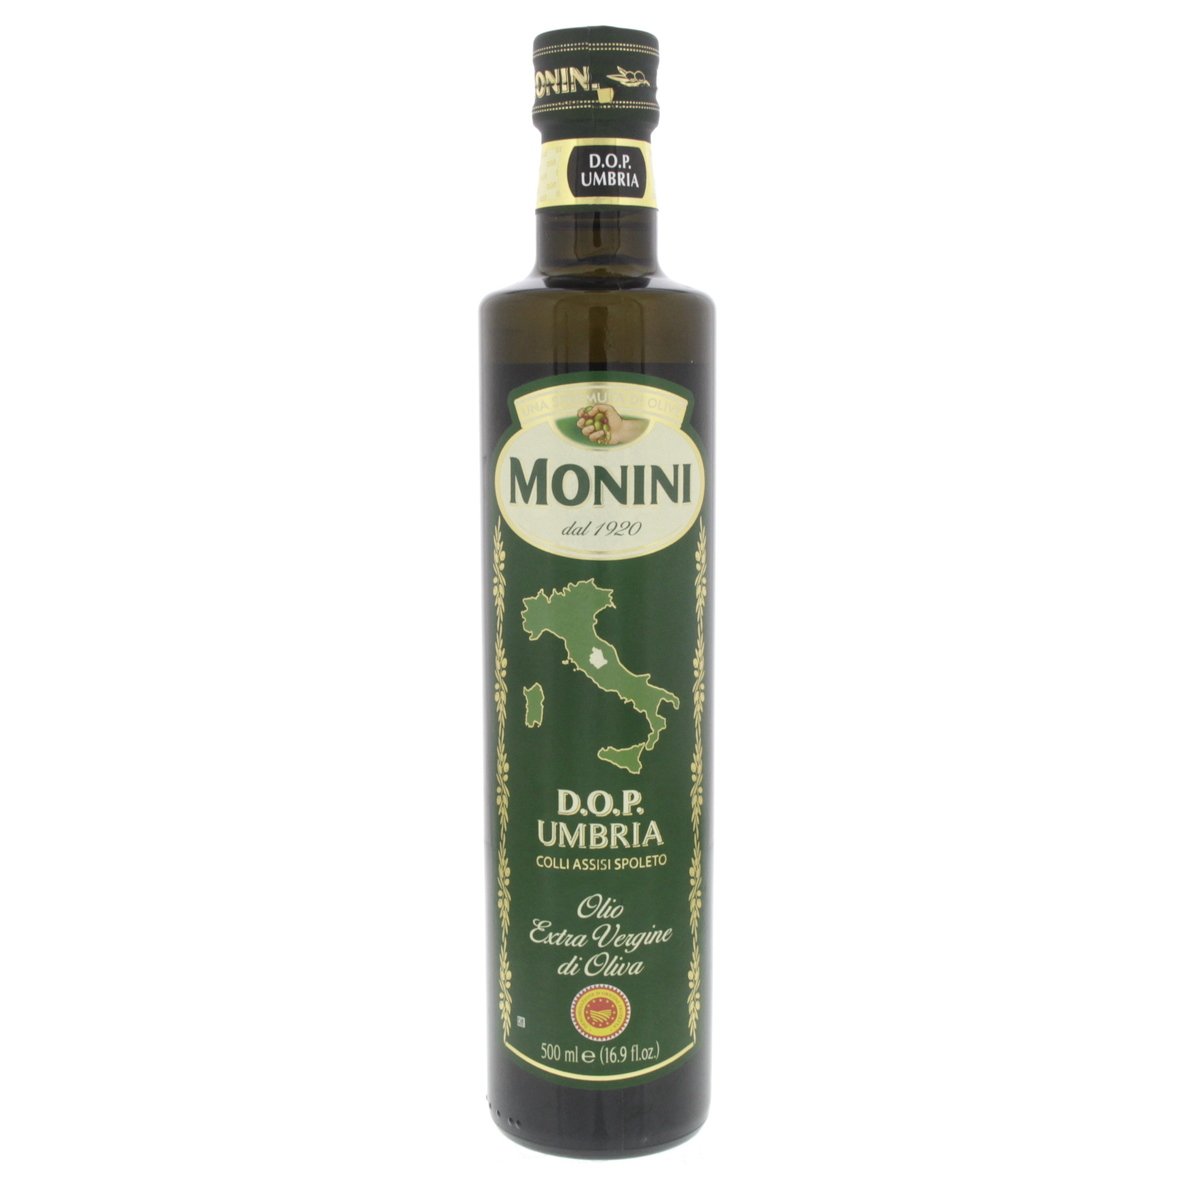 Monini D.O.P. Umbria Olio Extra Vergine Di Oliva 500 ml